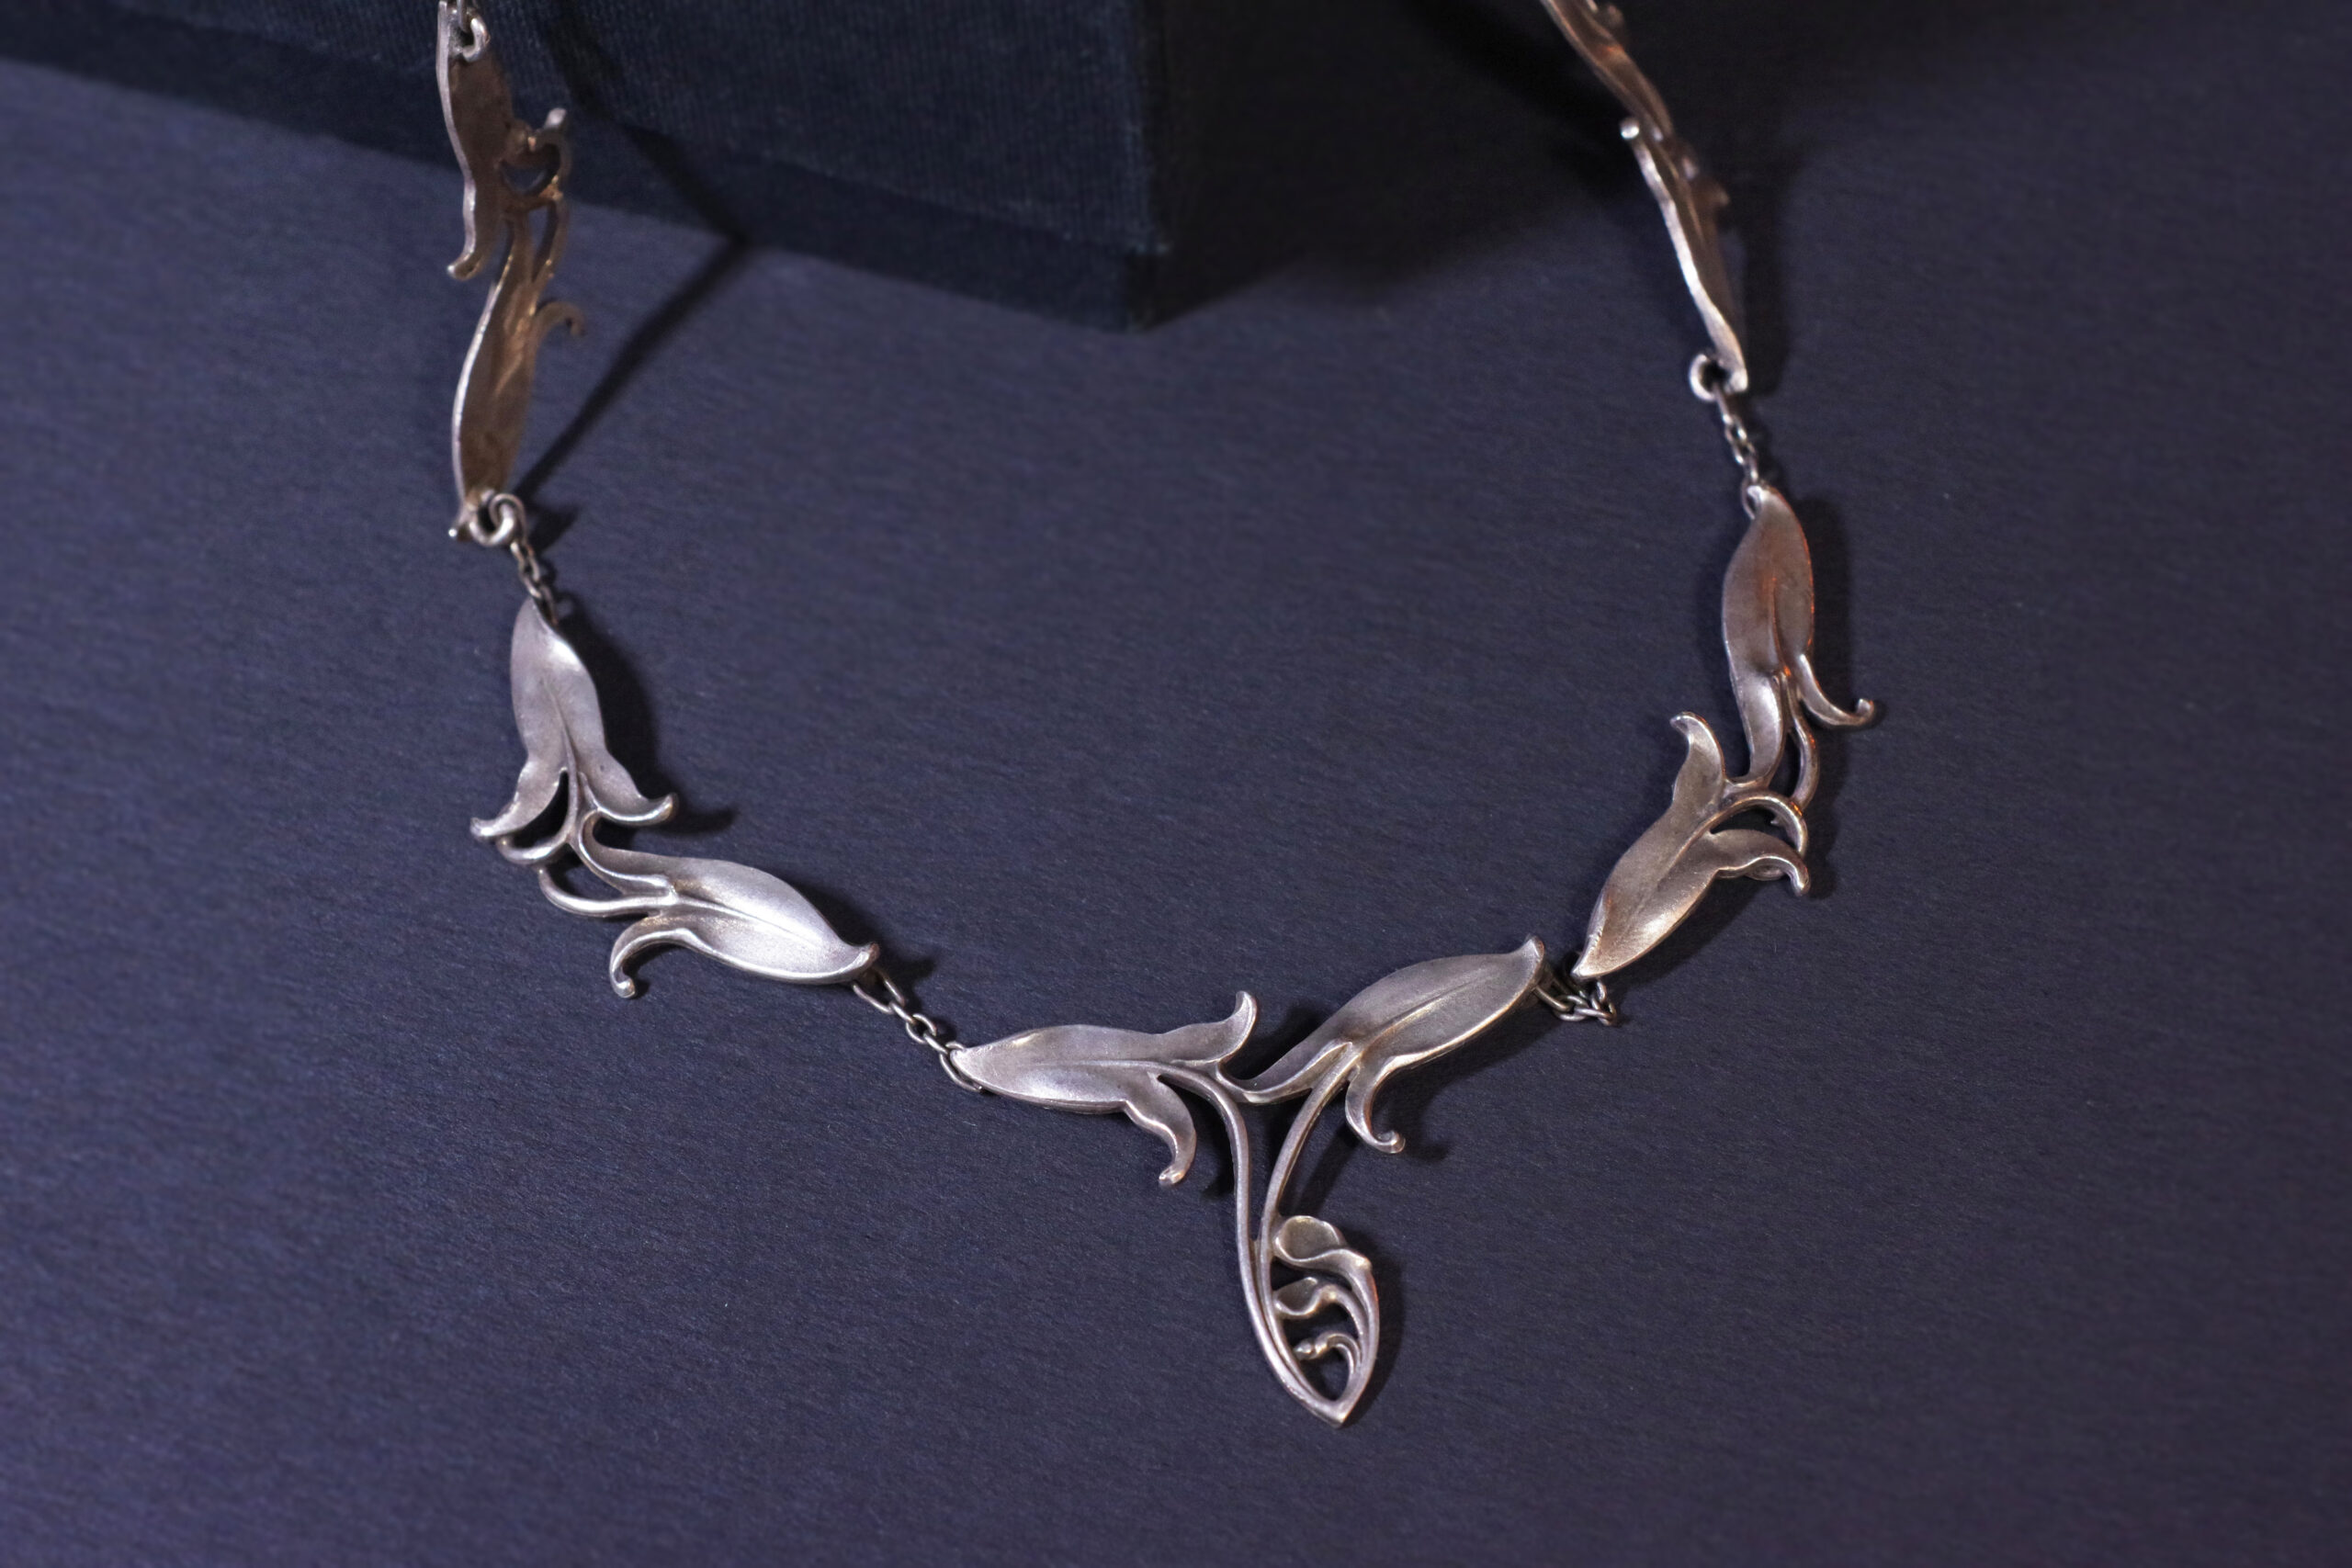 Art Nouveau necklace in silver